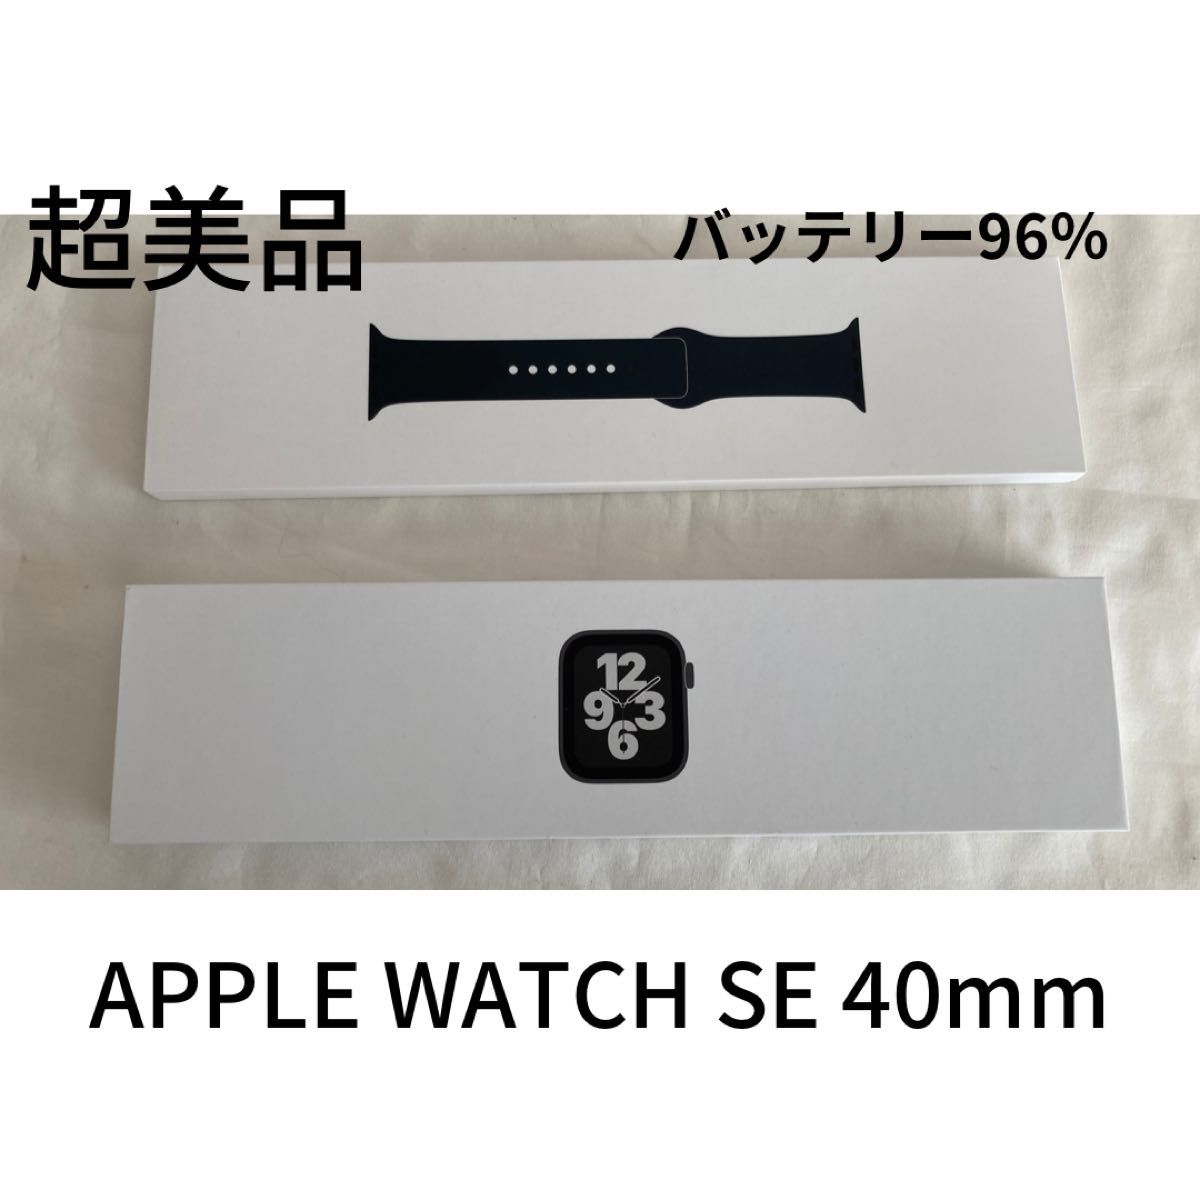 美品 Apple Watch SE GPSモデル 40mm スペースグレイ アルミニウム